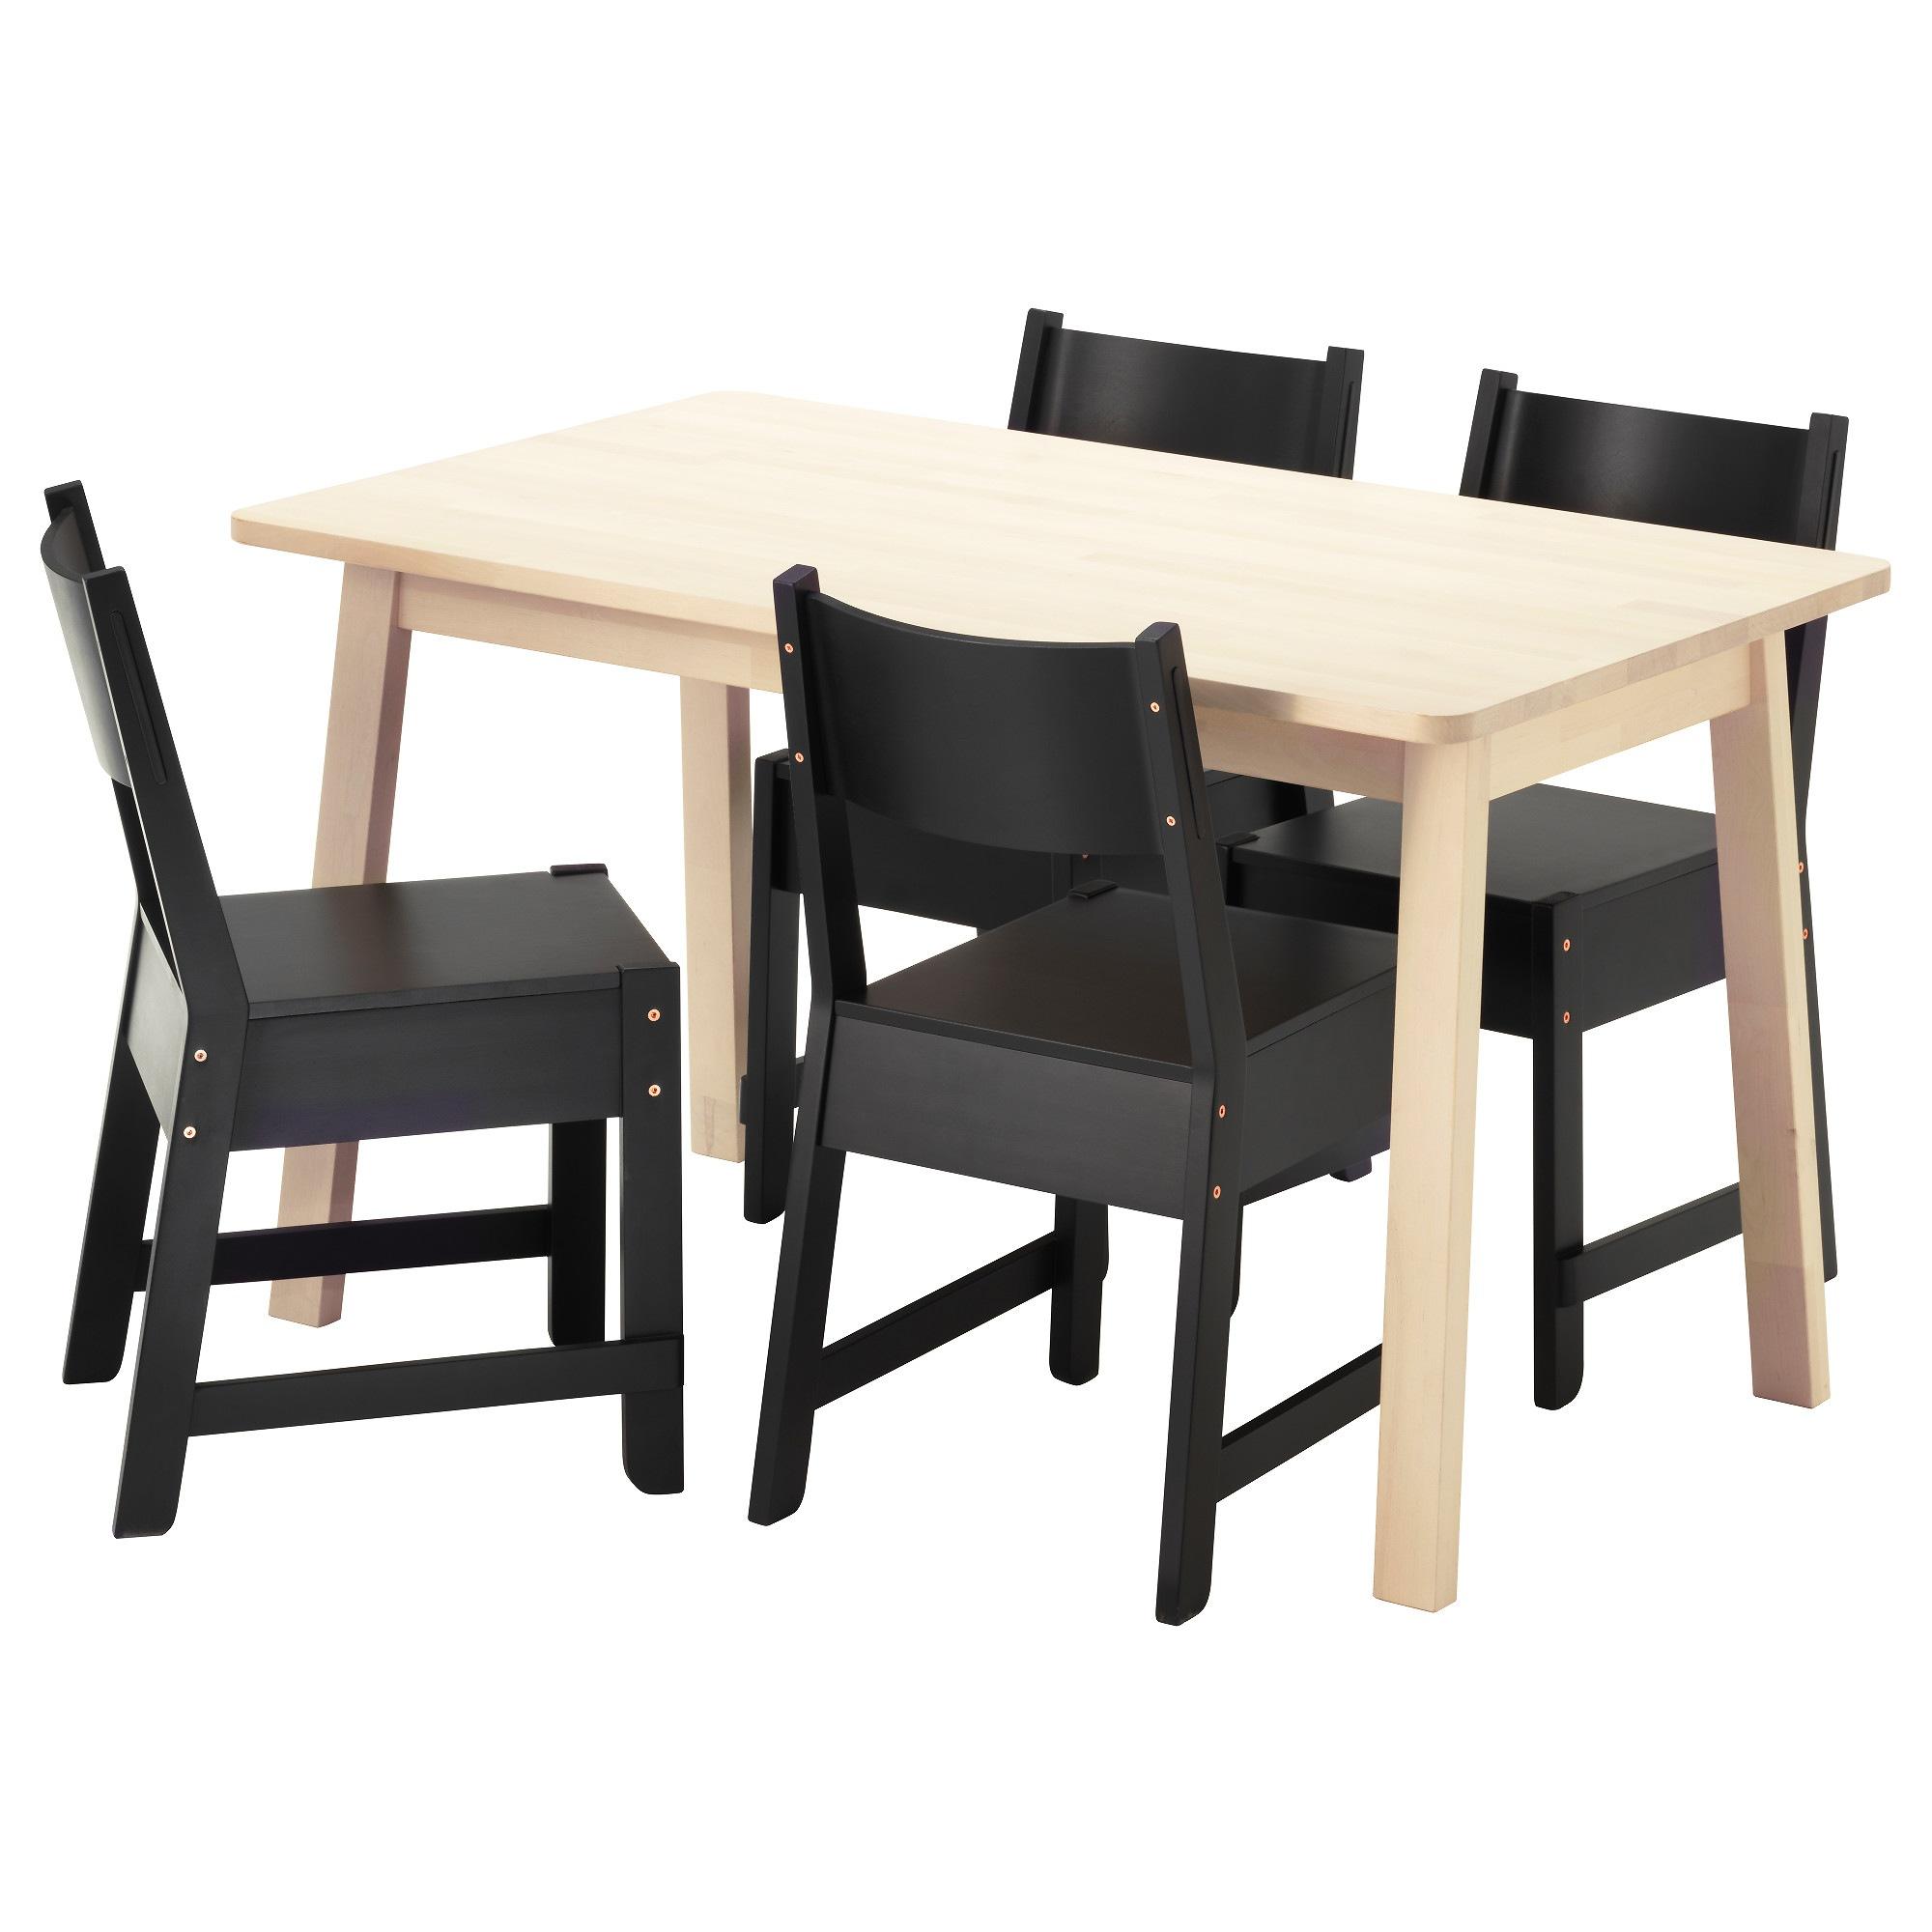 [ด่วน!! โปรโมชั่นมีจำนวนจำกัด] โต้ะ เก้าอี้ ชุดโต้ะเก้าอี้ โต้ะกินข้าว เก้าอี้กินข้าว โต้ะทานข้าว โต้ะรับแขก โต๊ะและเก้าอี้ 4 ตัว โต๊ะคาเฟ่ NORRÅKER / NORRÅKER